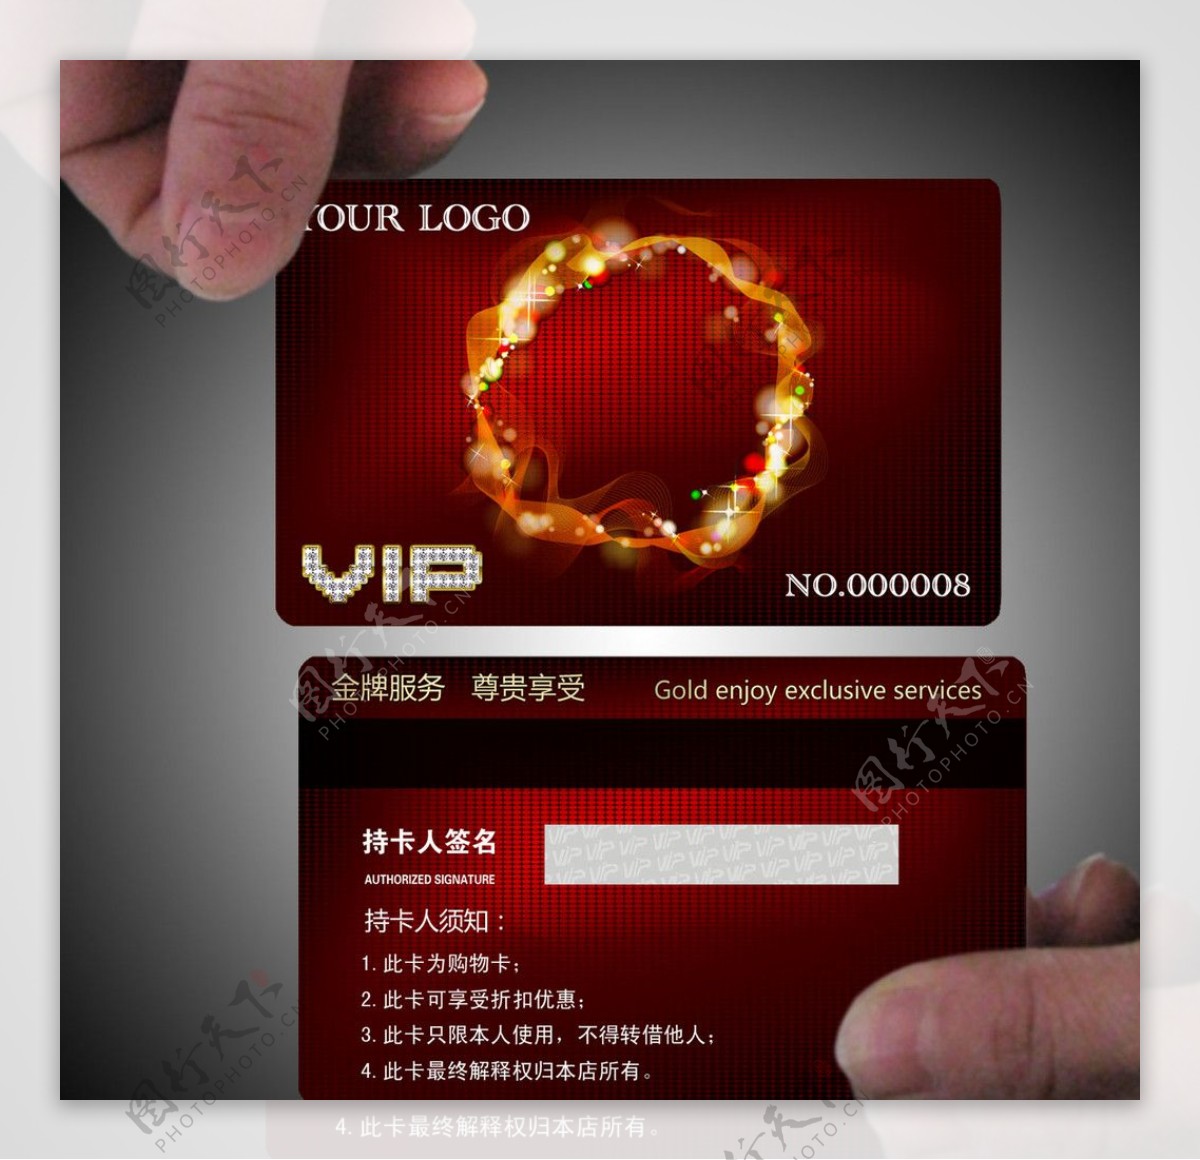 钻石VIP卡图片